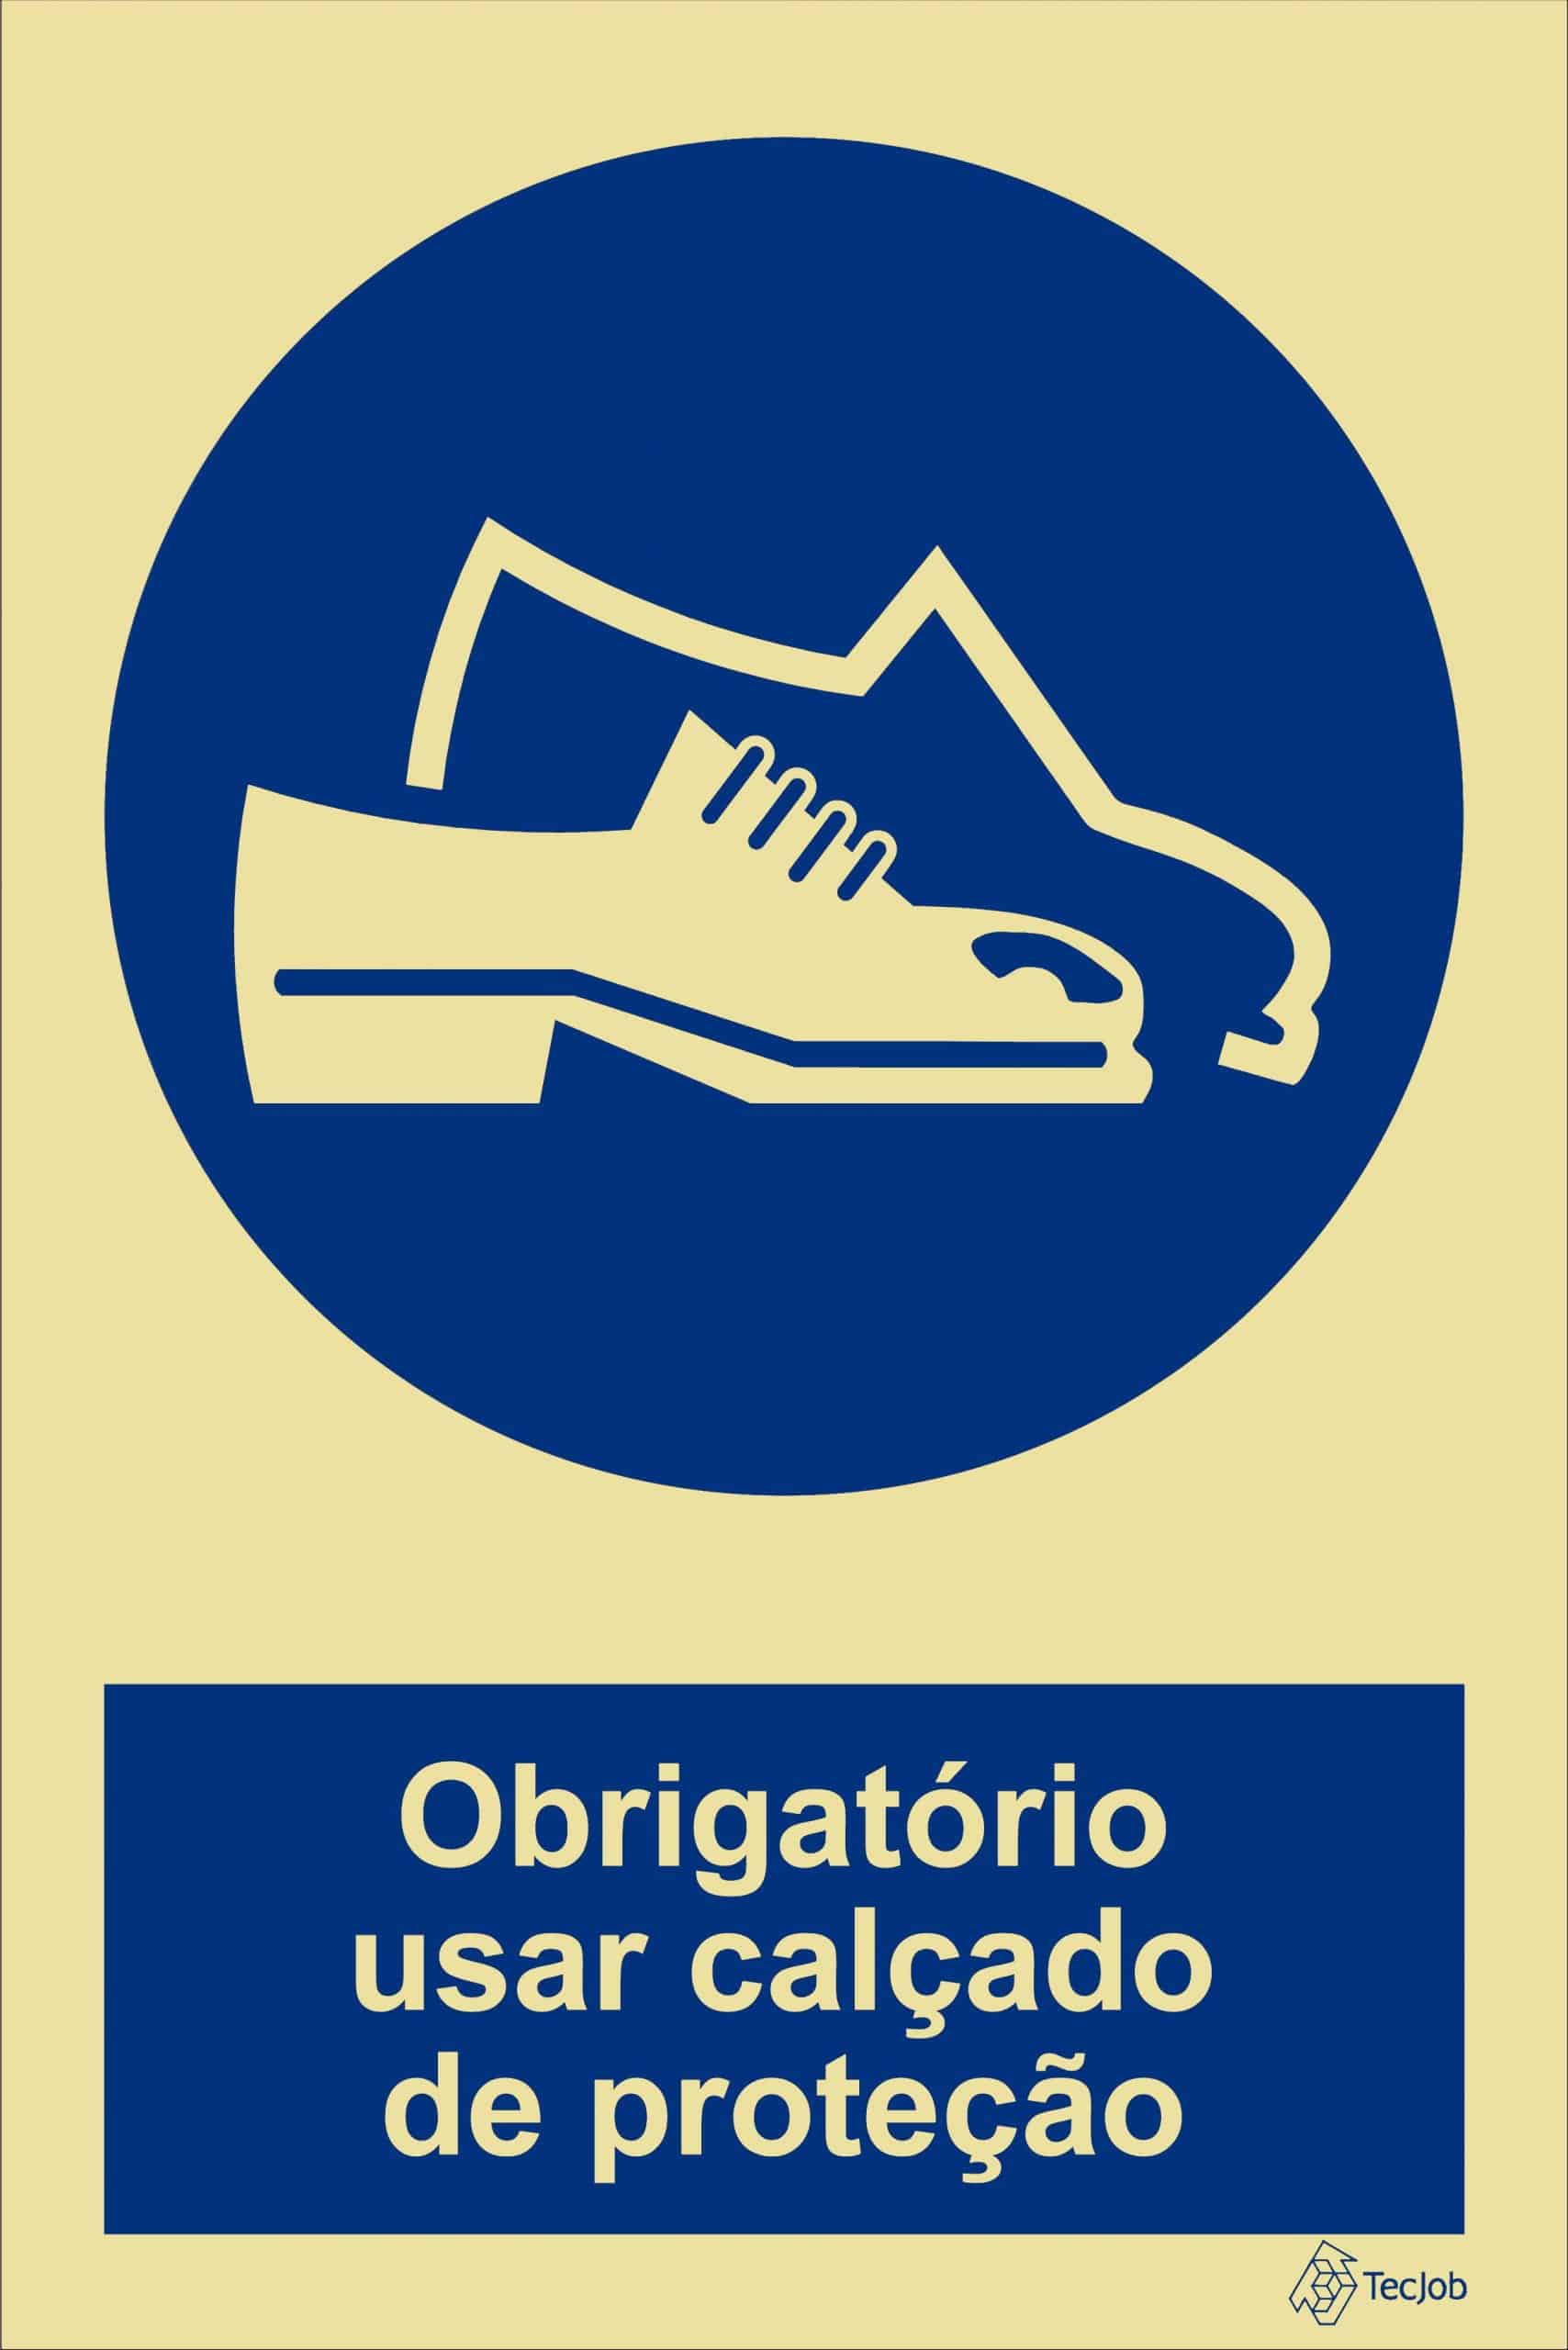 sinaletica obrigatório usar calcado de protecao - OB0054